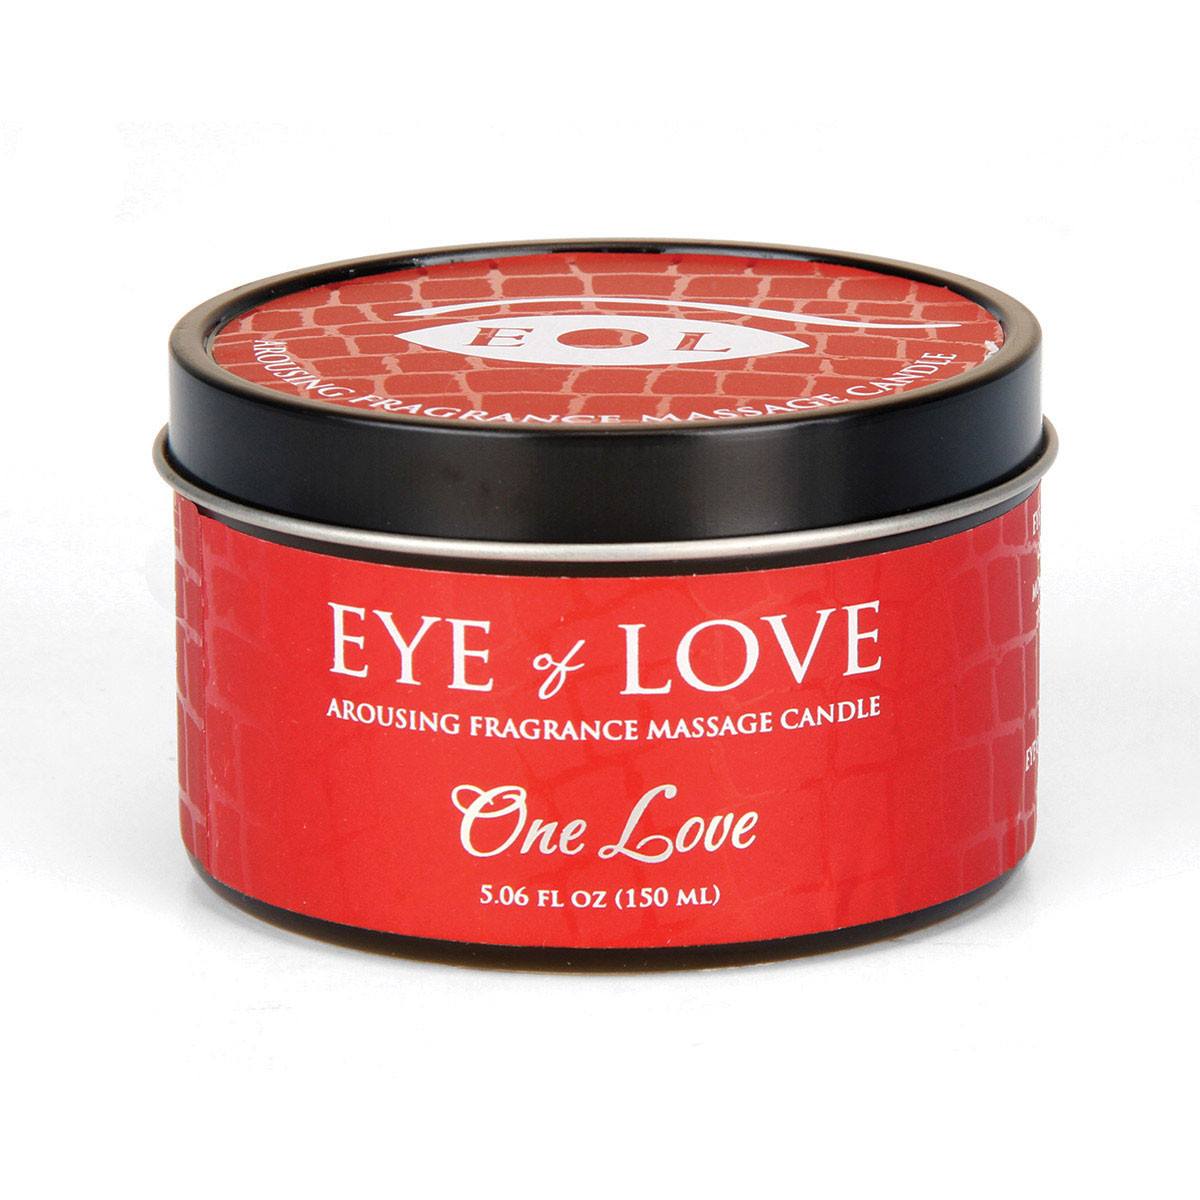 Eye of Love Pheromone Massage Candle - Hamilton Park Electronics